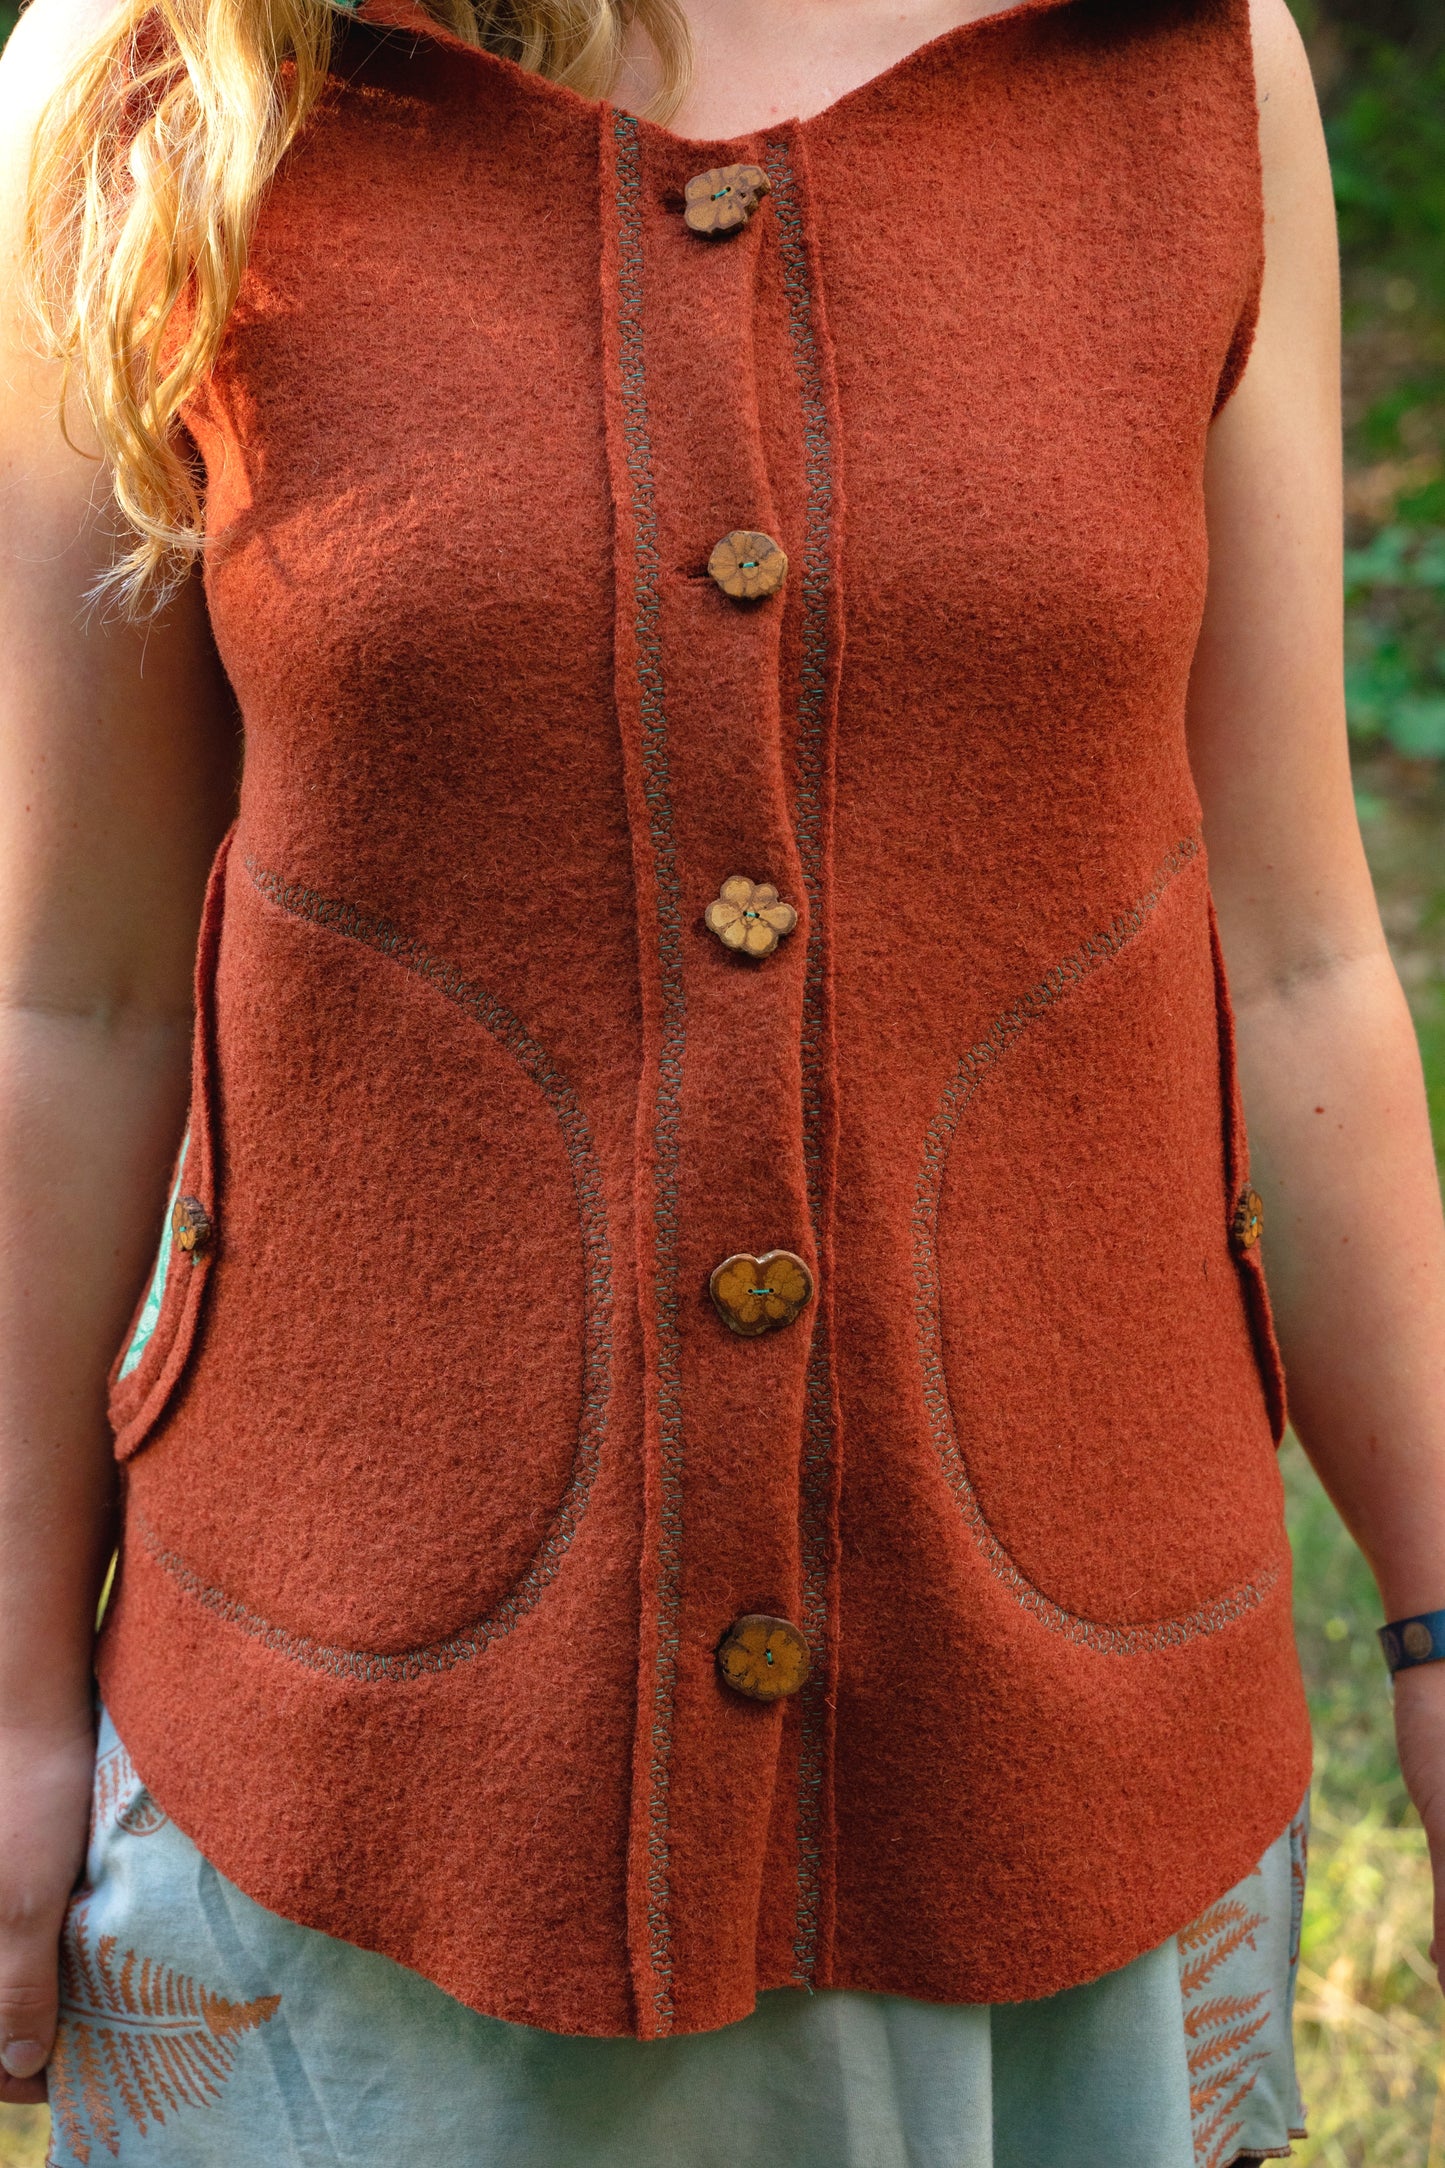 Size 38-40 - Wool felt vest